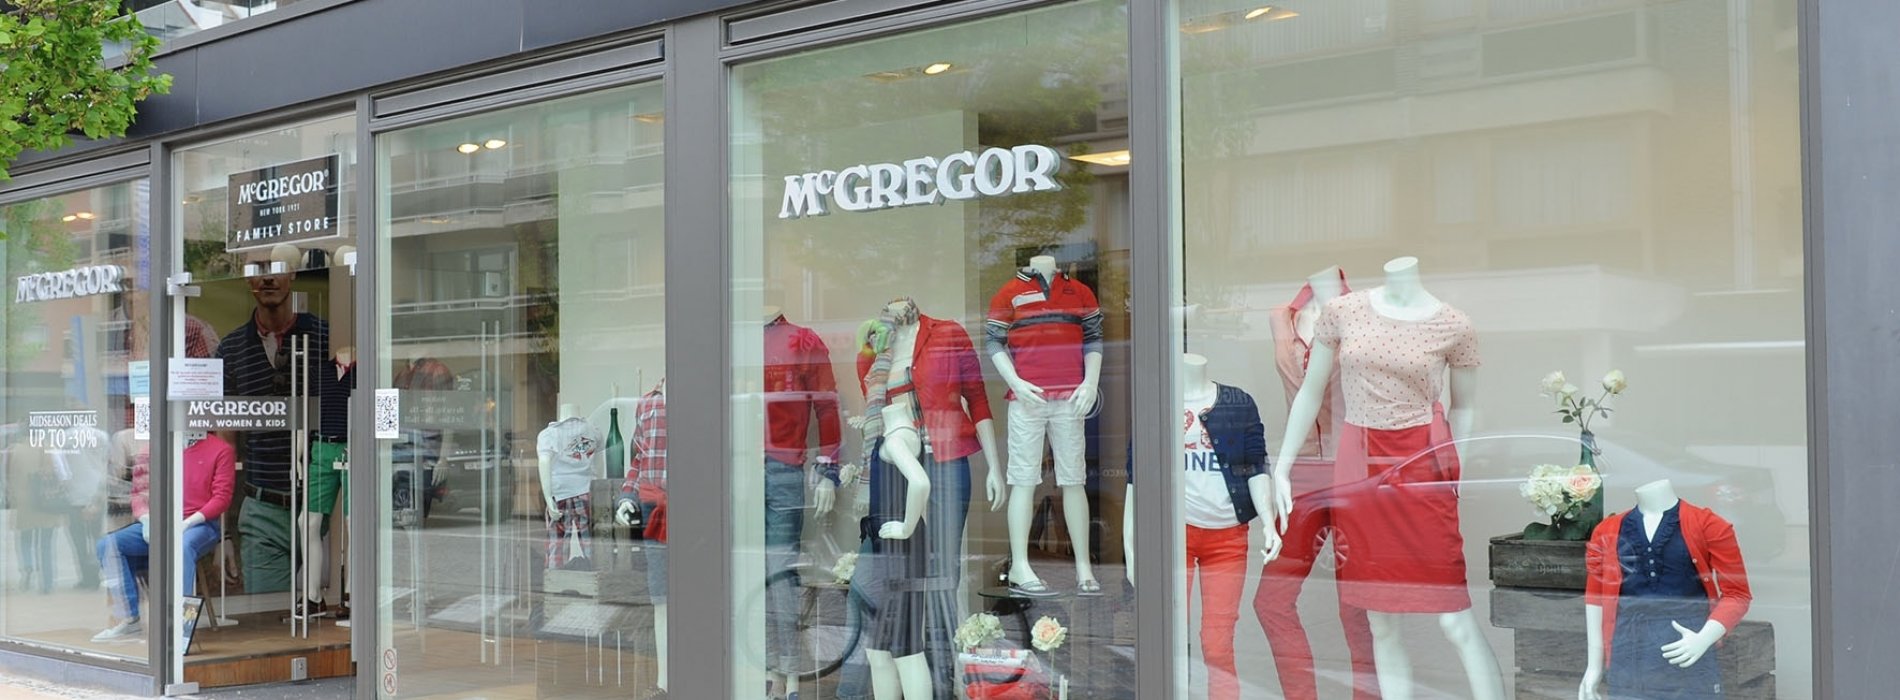 Mcgregor Shop - Mode - Winkelen - Visit Nieuwpoort